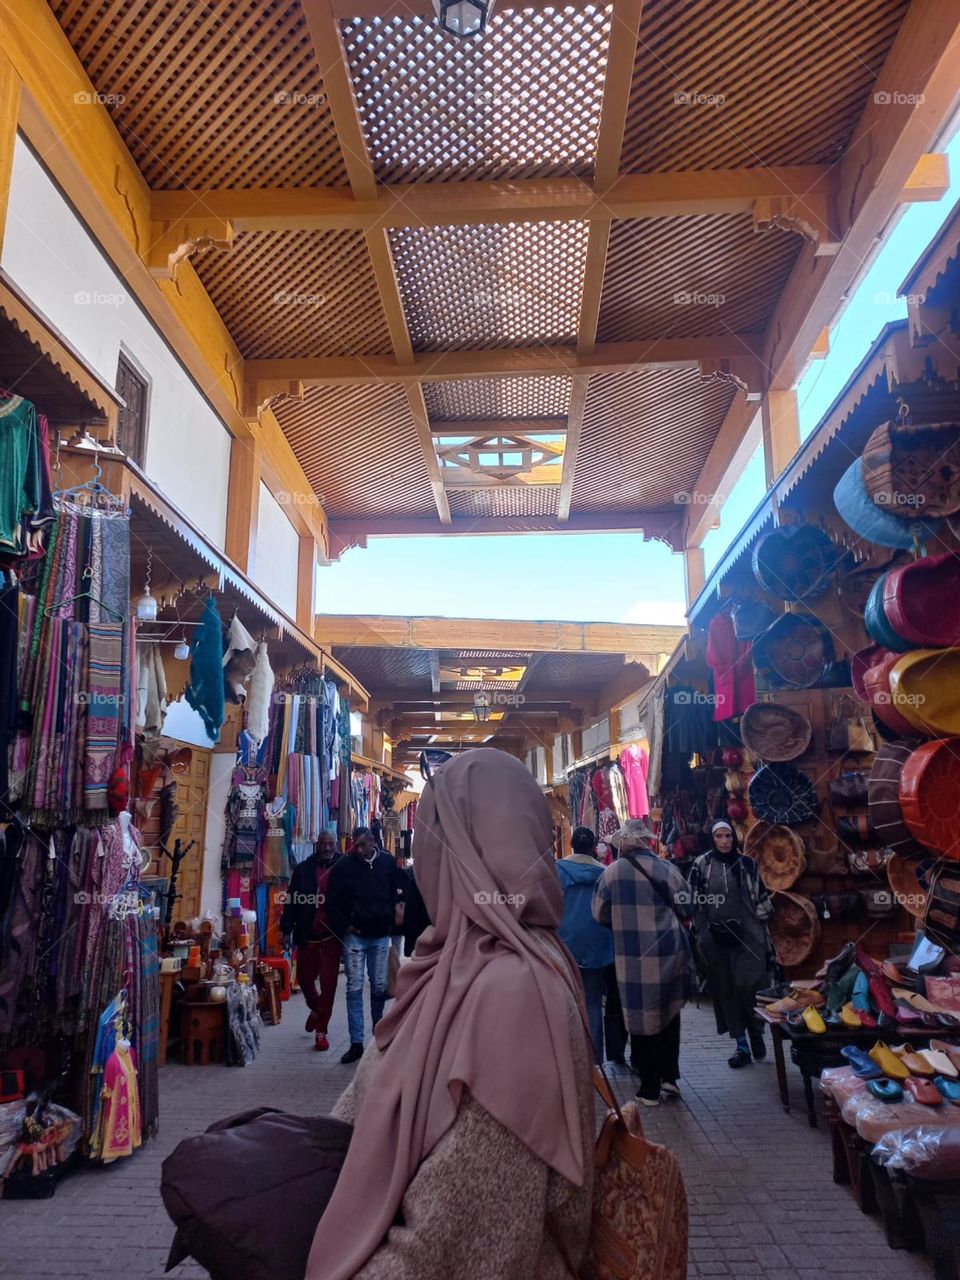 In old medinah